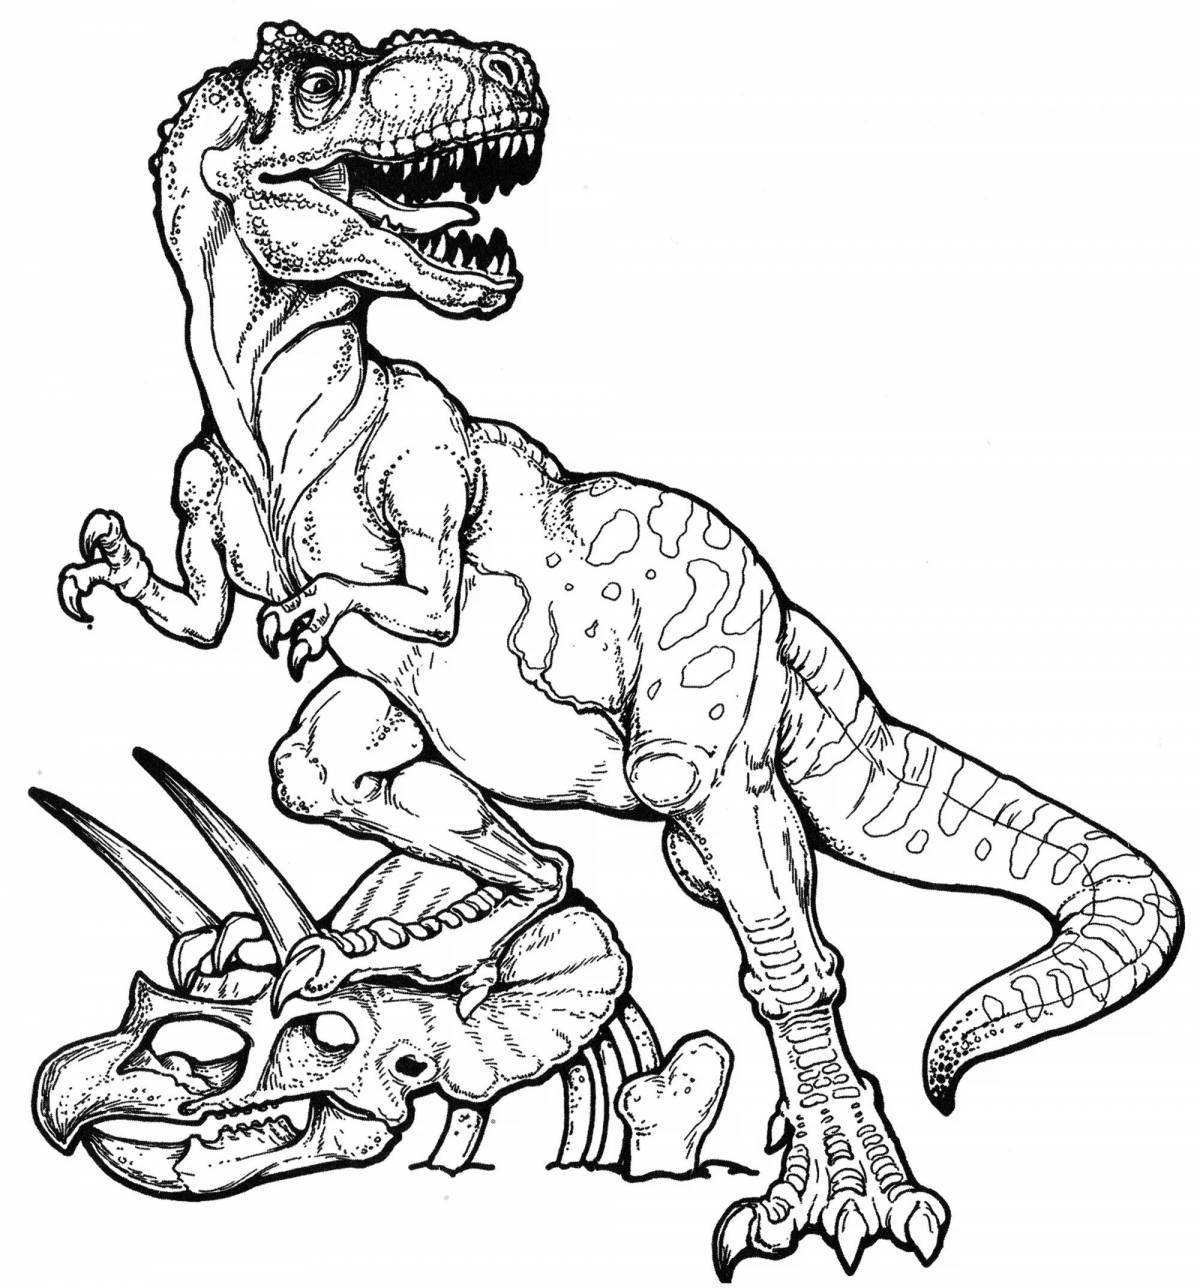 Bright dinosaur battle illustration